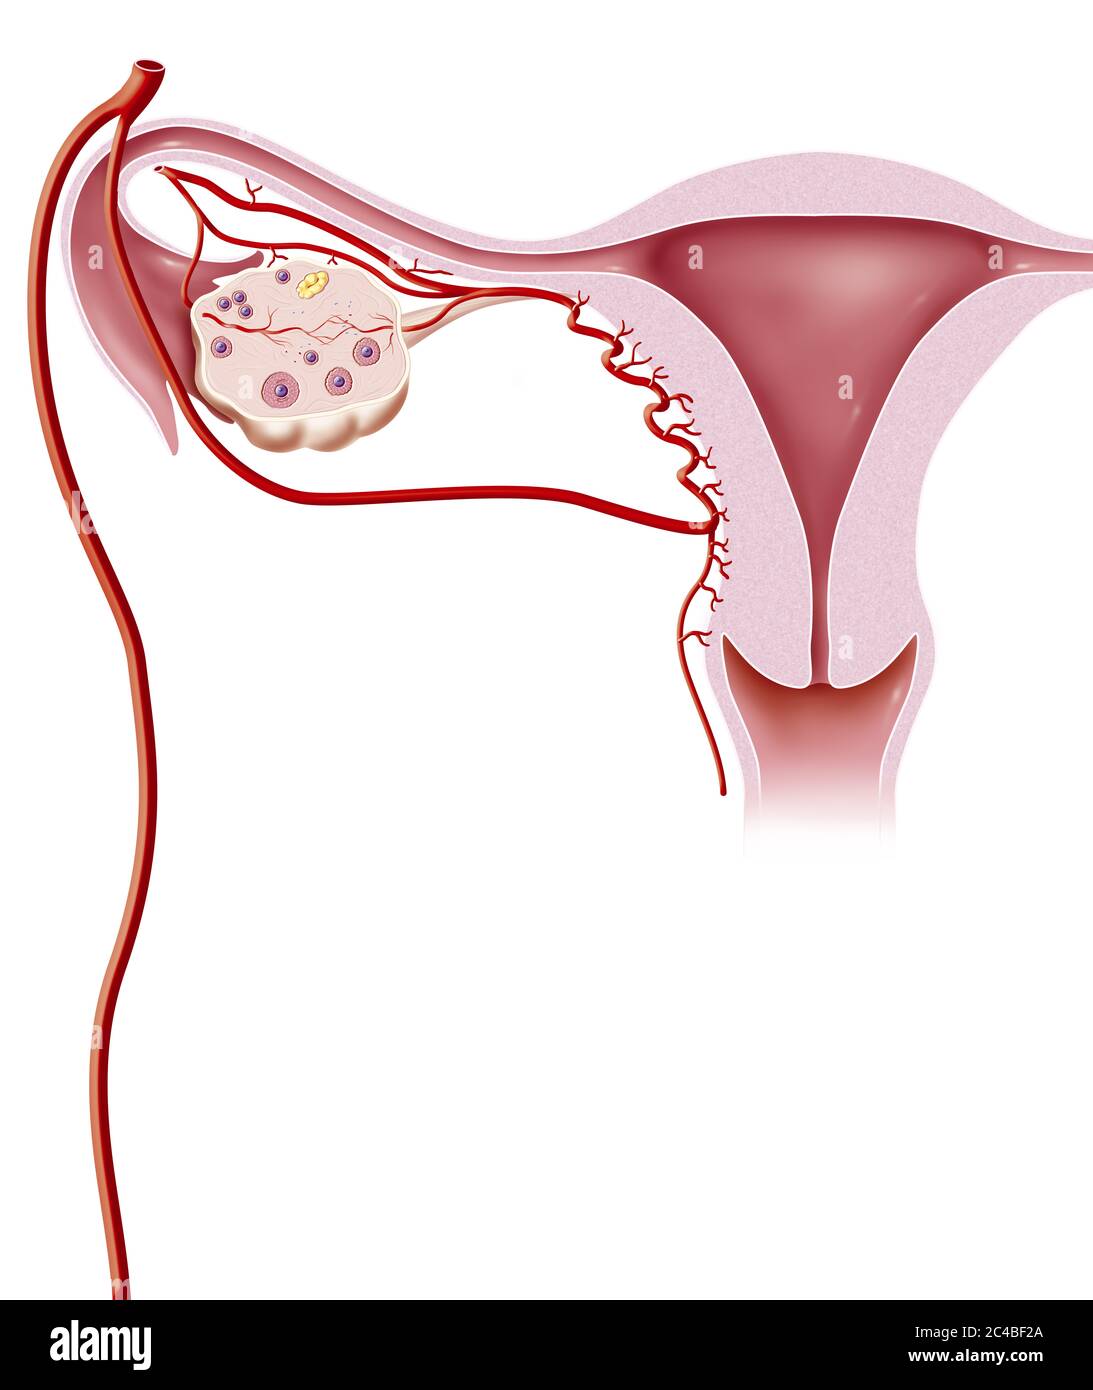 Vascularización uterina, arteria uterina, ovario, arteria ovárica. La arteria uterina surge de la arteria ilíaca primaria habiendo dado dos ramas, una e Foto de stock